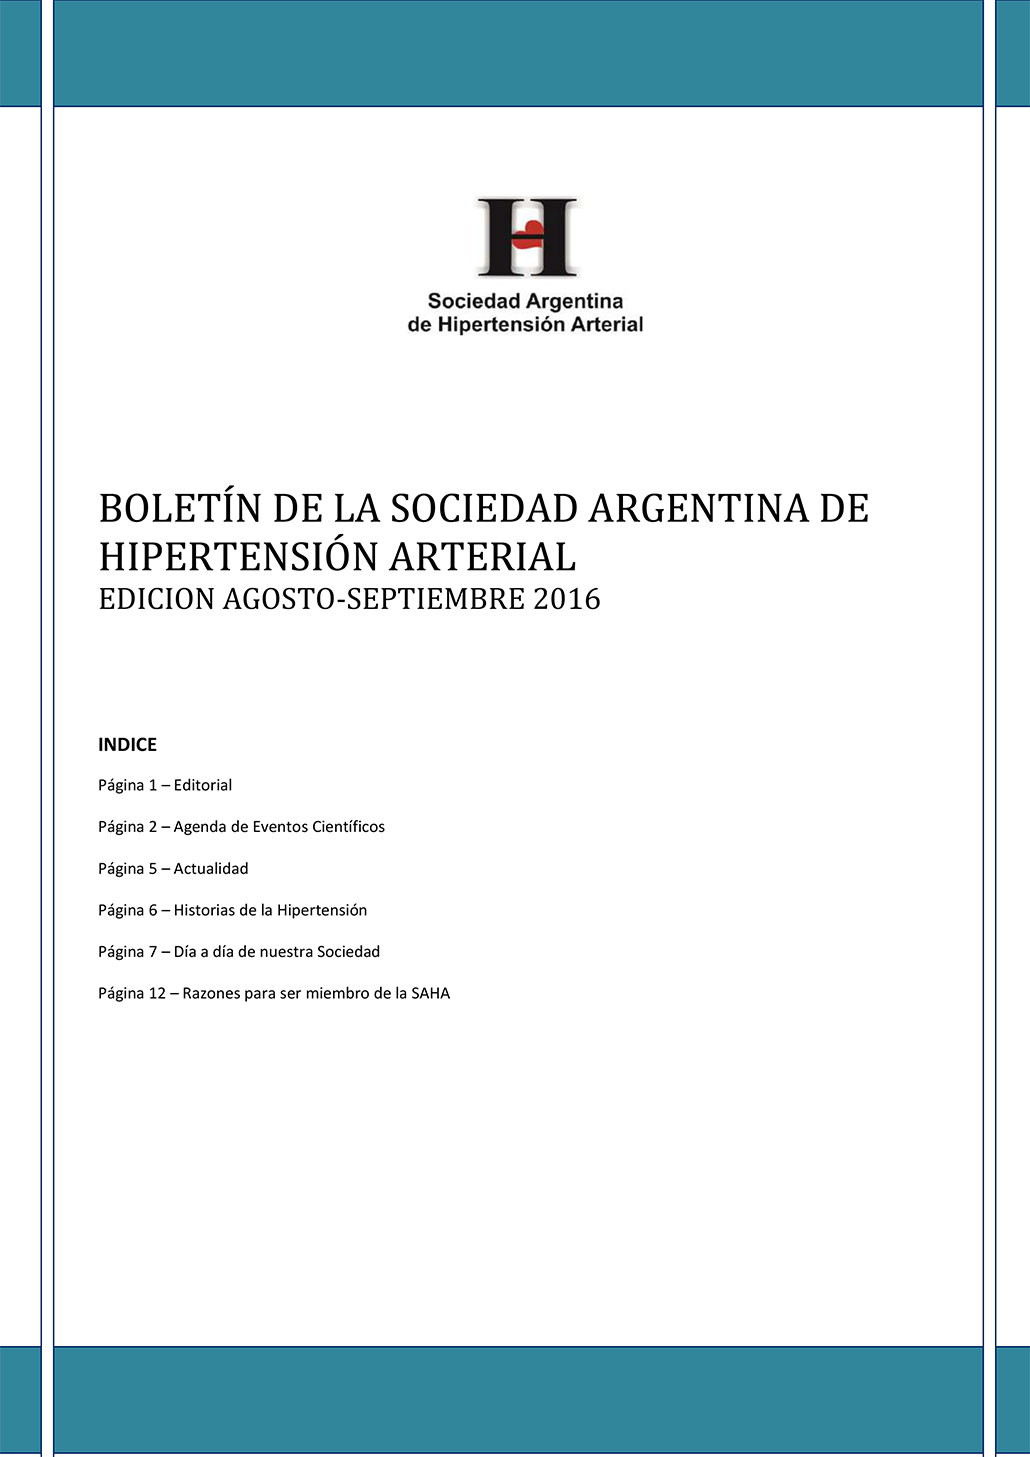 Boletín Periódico Sociedad Argentina de Hipertensión Arterial Agosto - Septiembre 2016